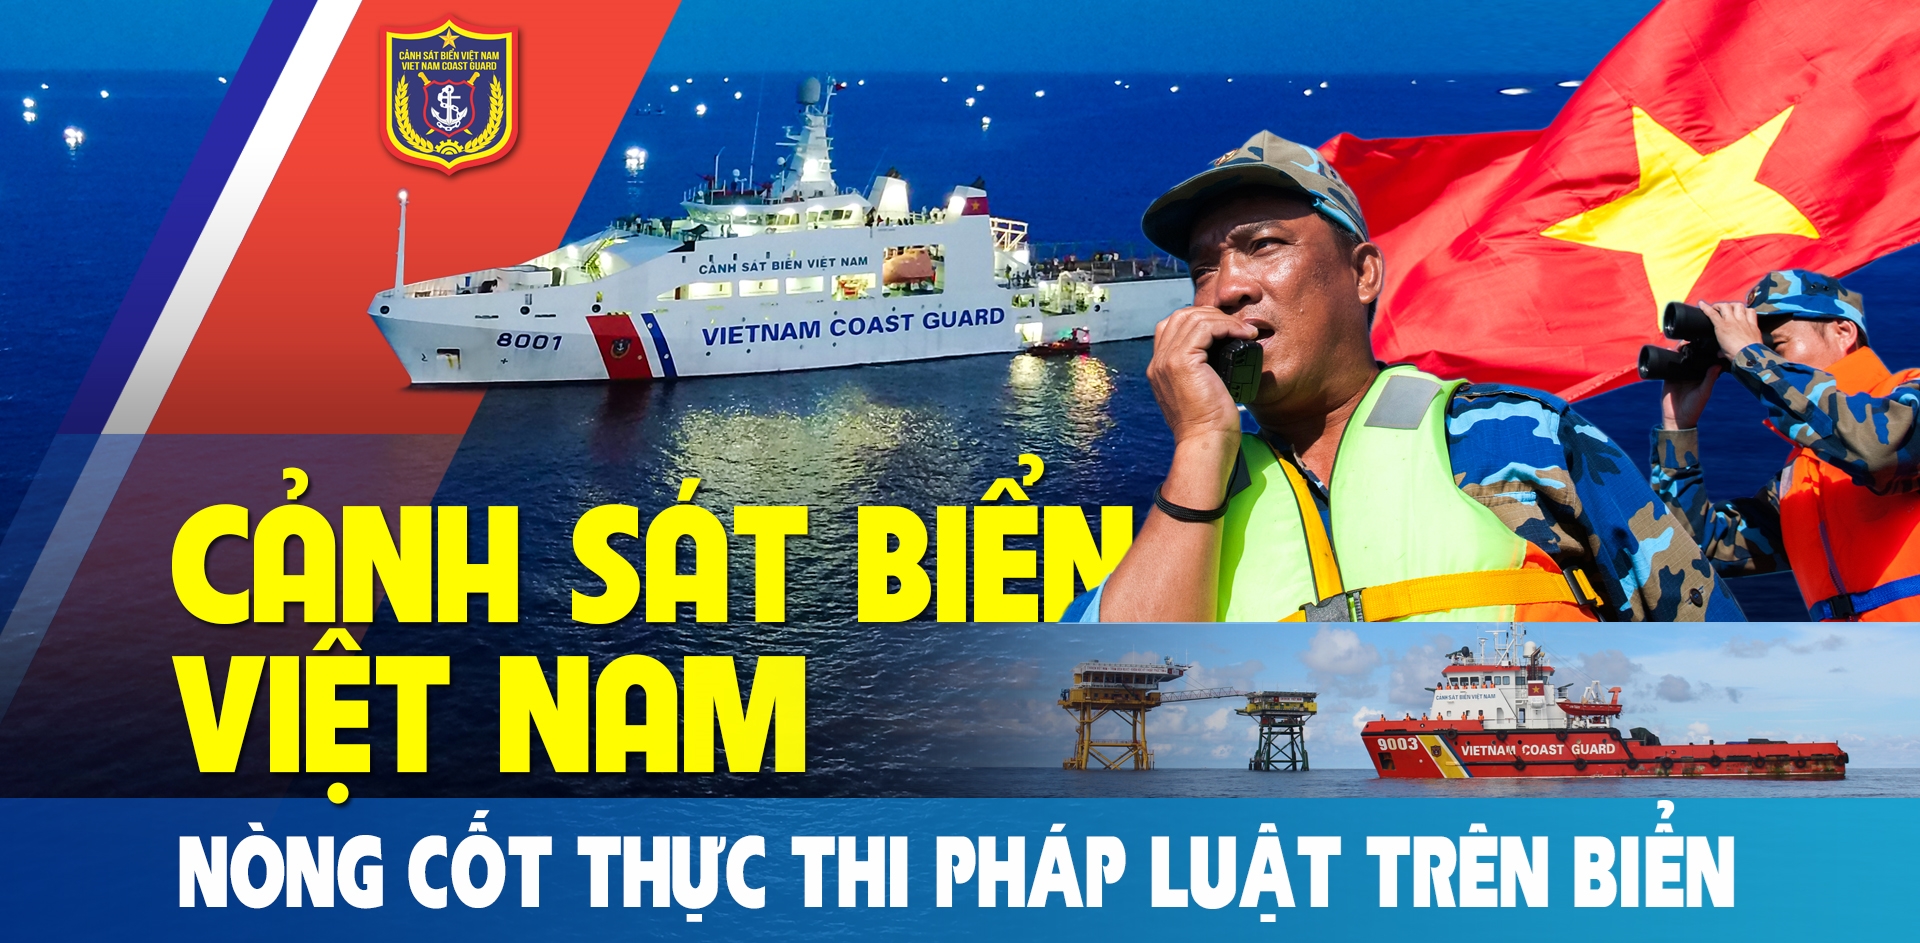 Cảnh sát biển Việt Nam: Cảnh sát biển Việt Nam luôn có mặt để bảo vệ an ninh, trật tự trên biển và bảo vệ quyền lợi của ngư dân. Đến với bộ ảnh này, bạn sẽ được tìm hiểu về những hoạt động của họ và ý nghĩa của công việc này, cũng như sự cống hiến, nổ lực của các nhân viên.